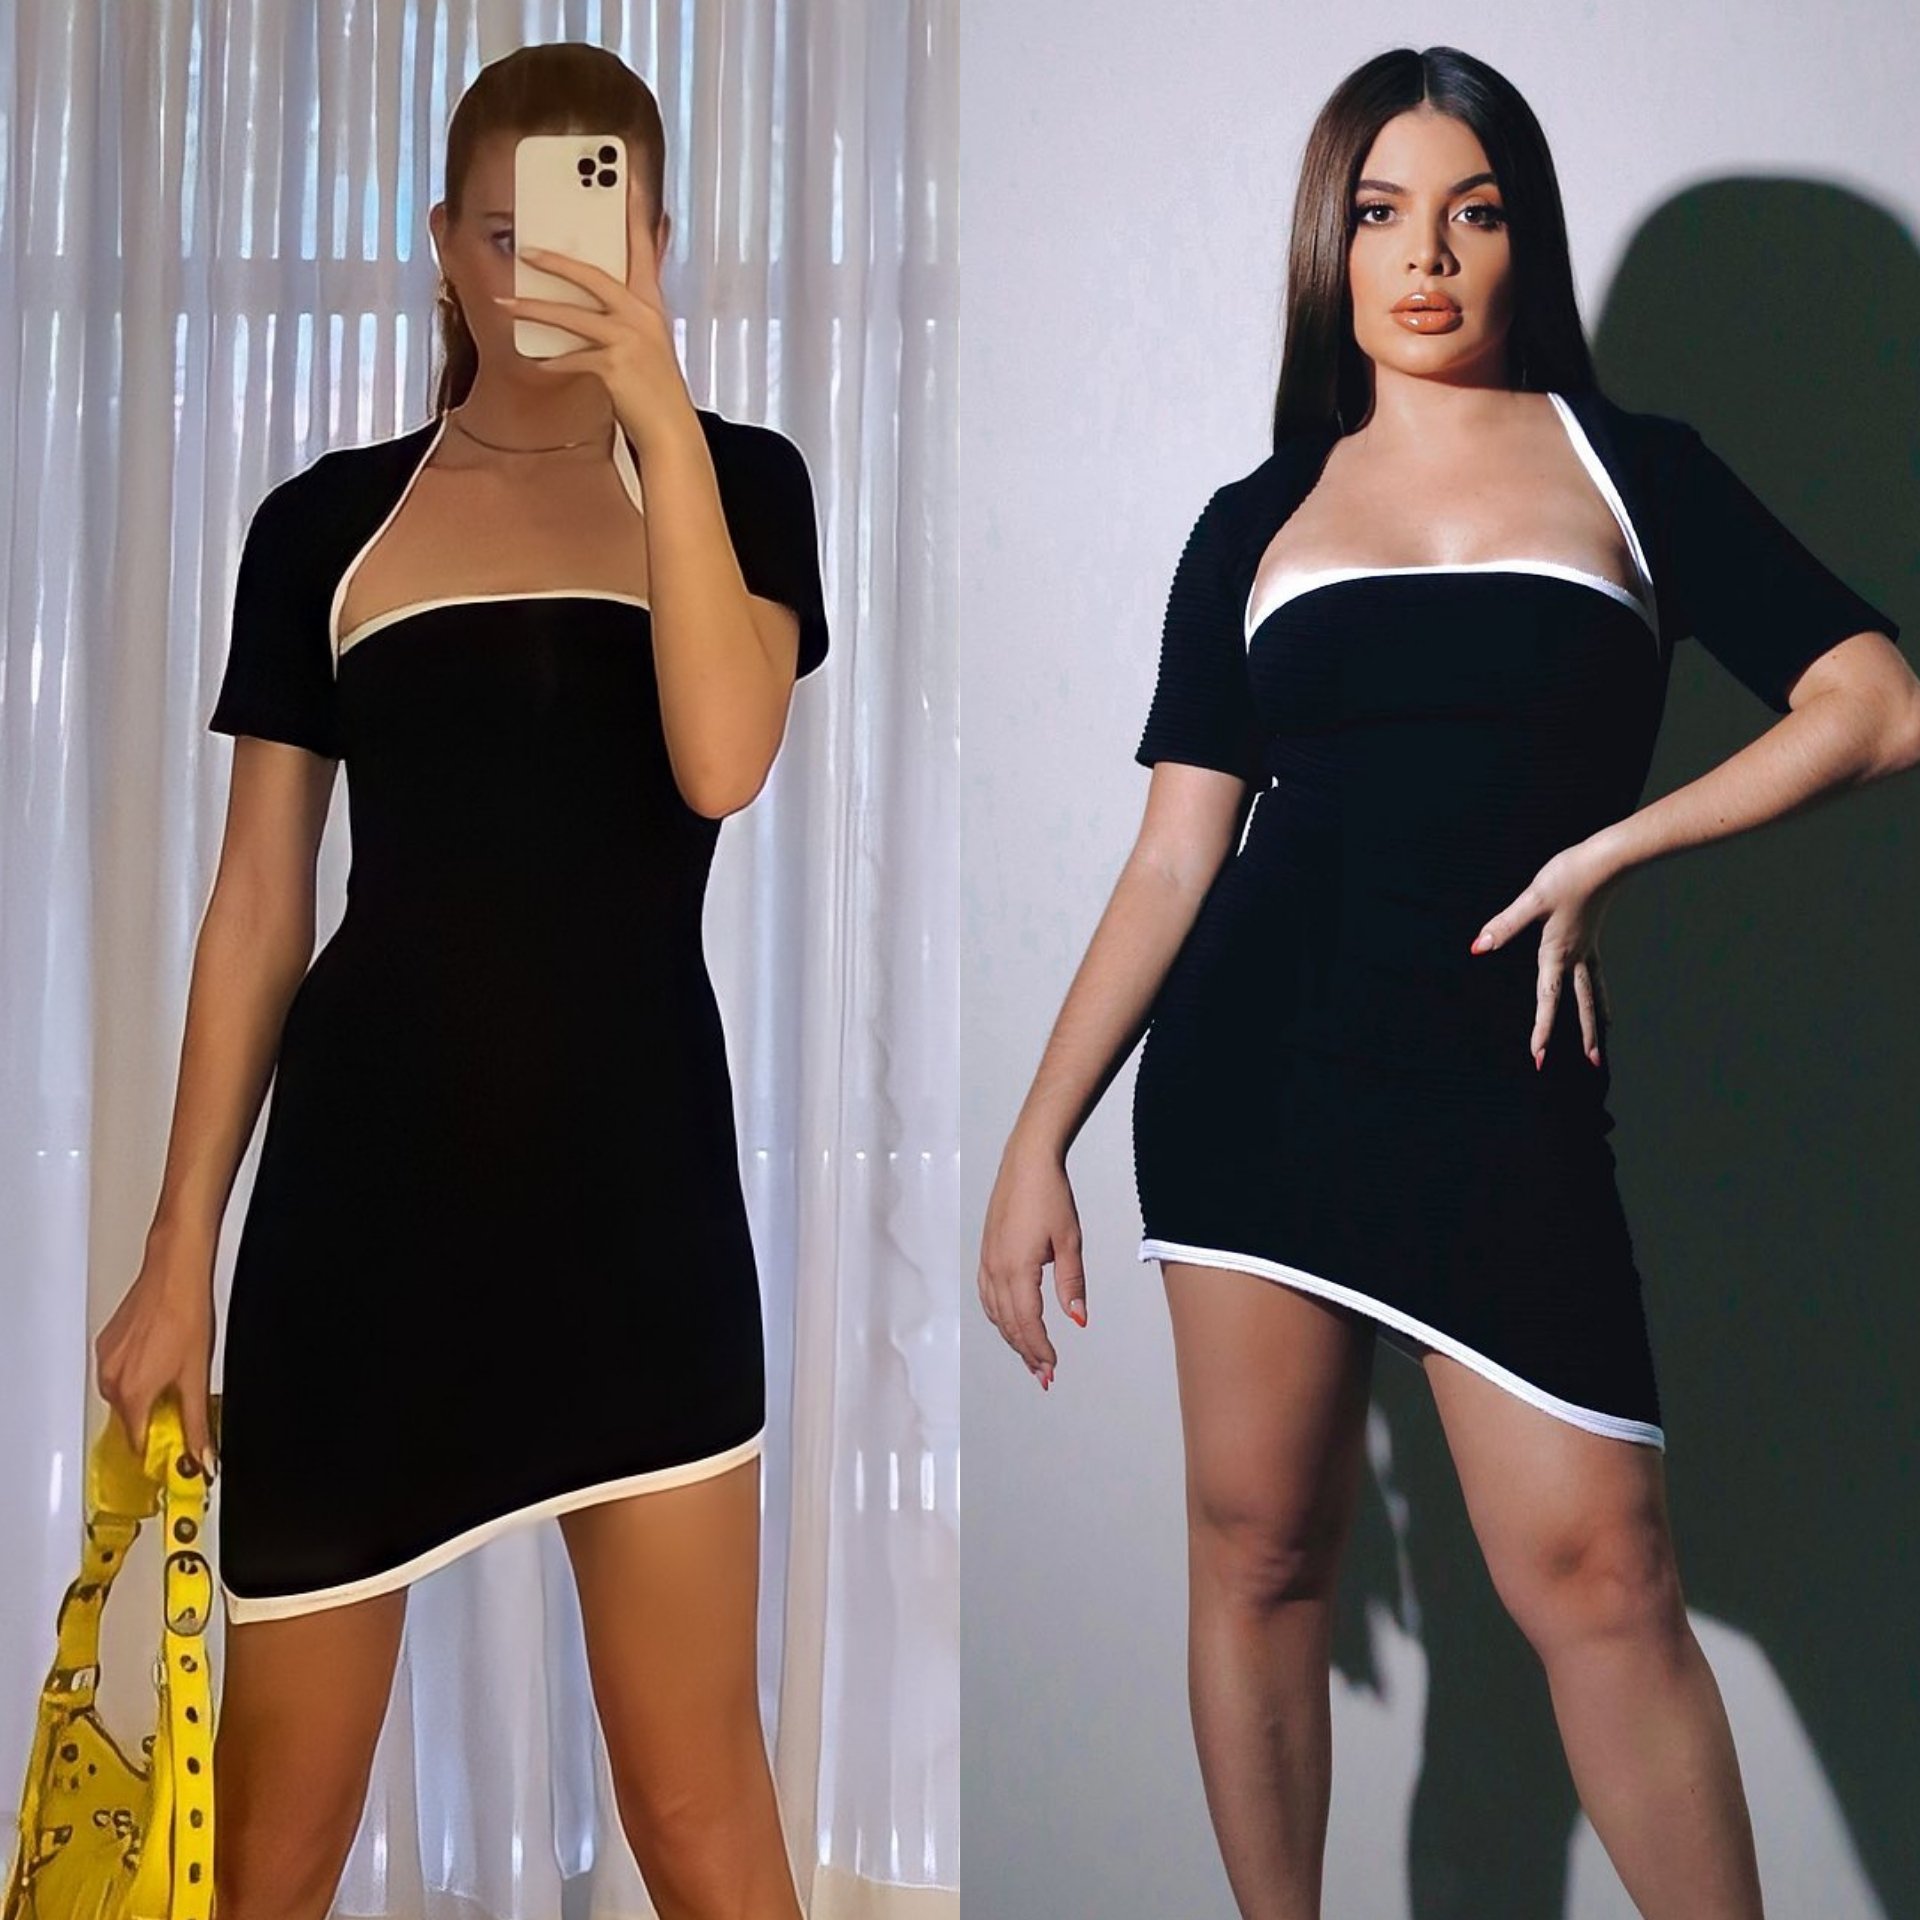 Marina Ruy Barbosa on X: "A influenciadora Gkay compartilhou em seu IG  Feed, uma foto usando o vestido "Cora Black" da marca da Marina Ginger.  https://t.co/nAqNeDV4jC" / X